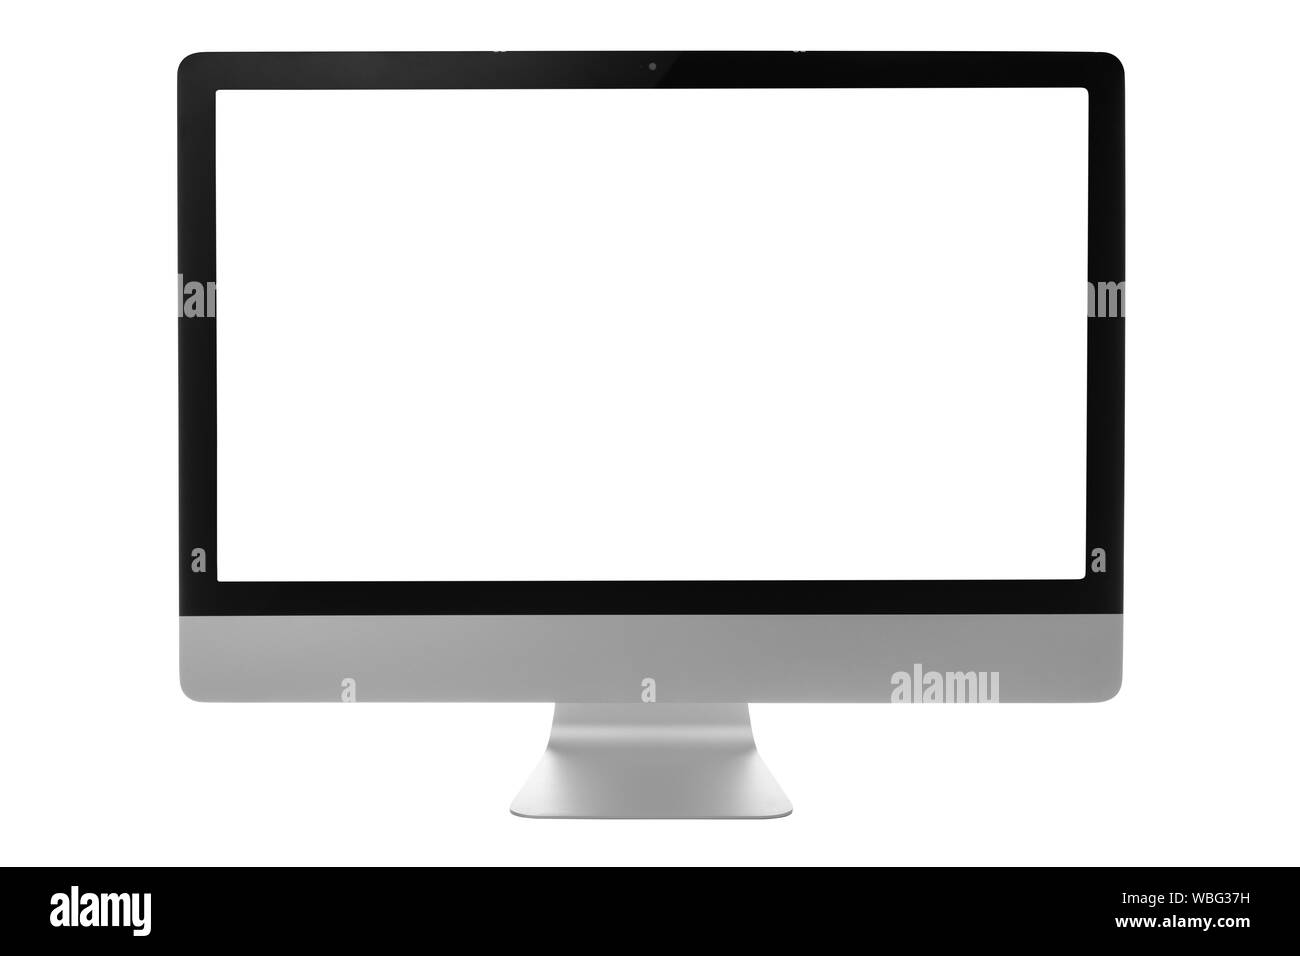 Le moniteur de l'ordinateur avec écran noir isolé sur fond blanc avec chemin de détourage. Banque D'Images